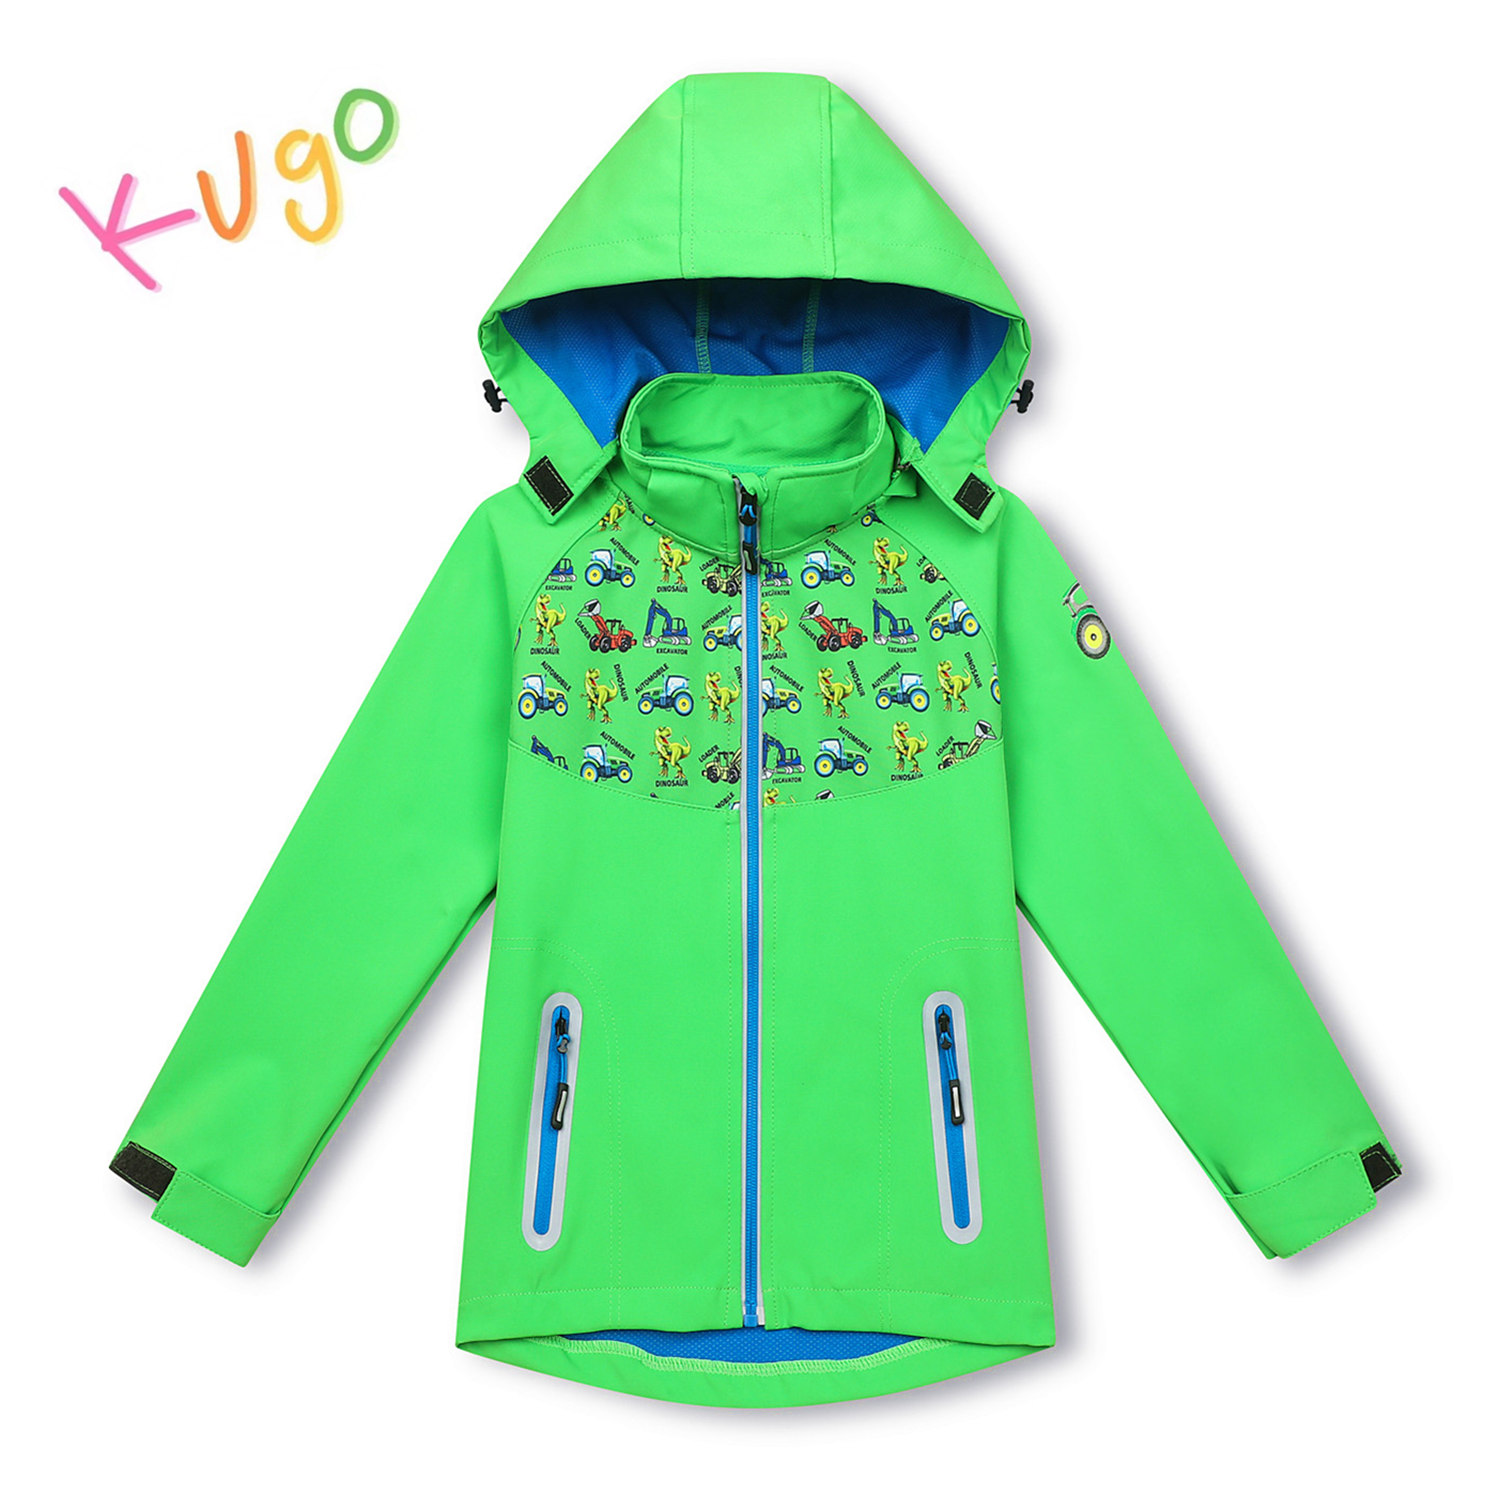 Chlapecká softshellová bunda - KUGO HK3121, zelená Barva: Zelená, Velikost: 80